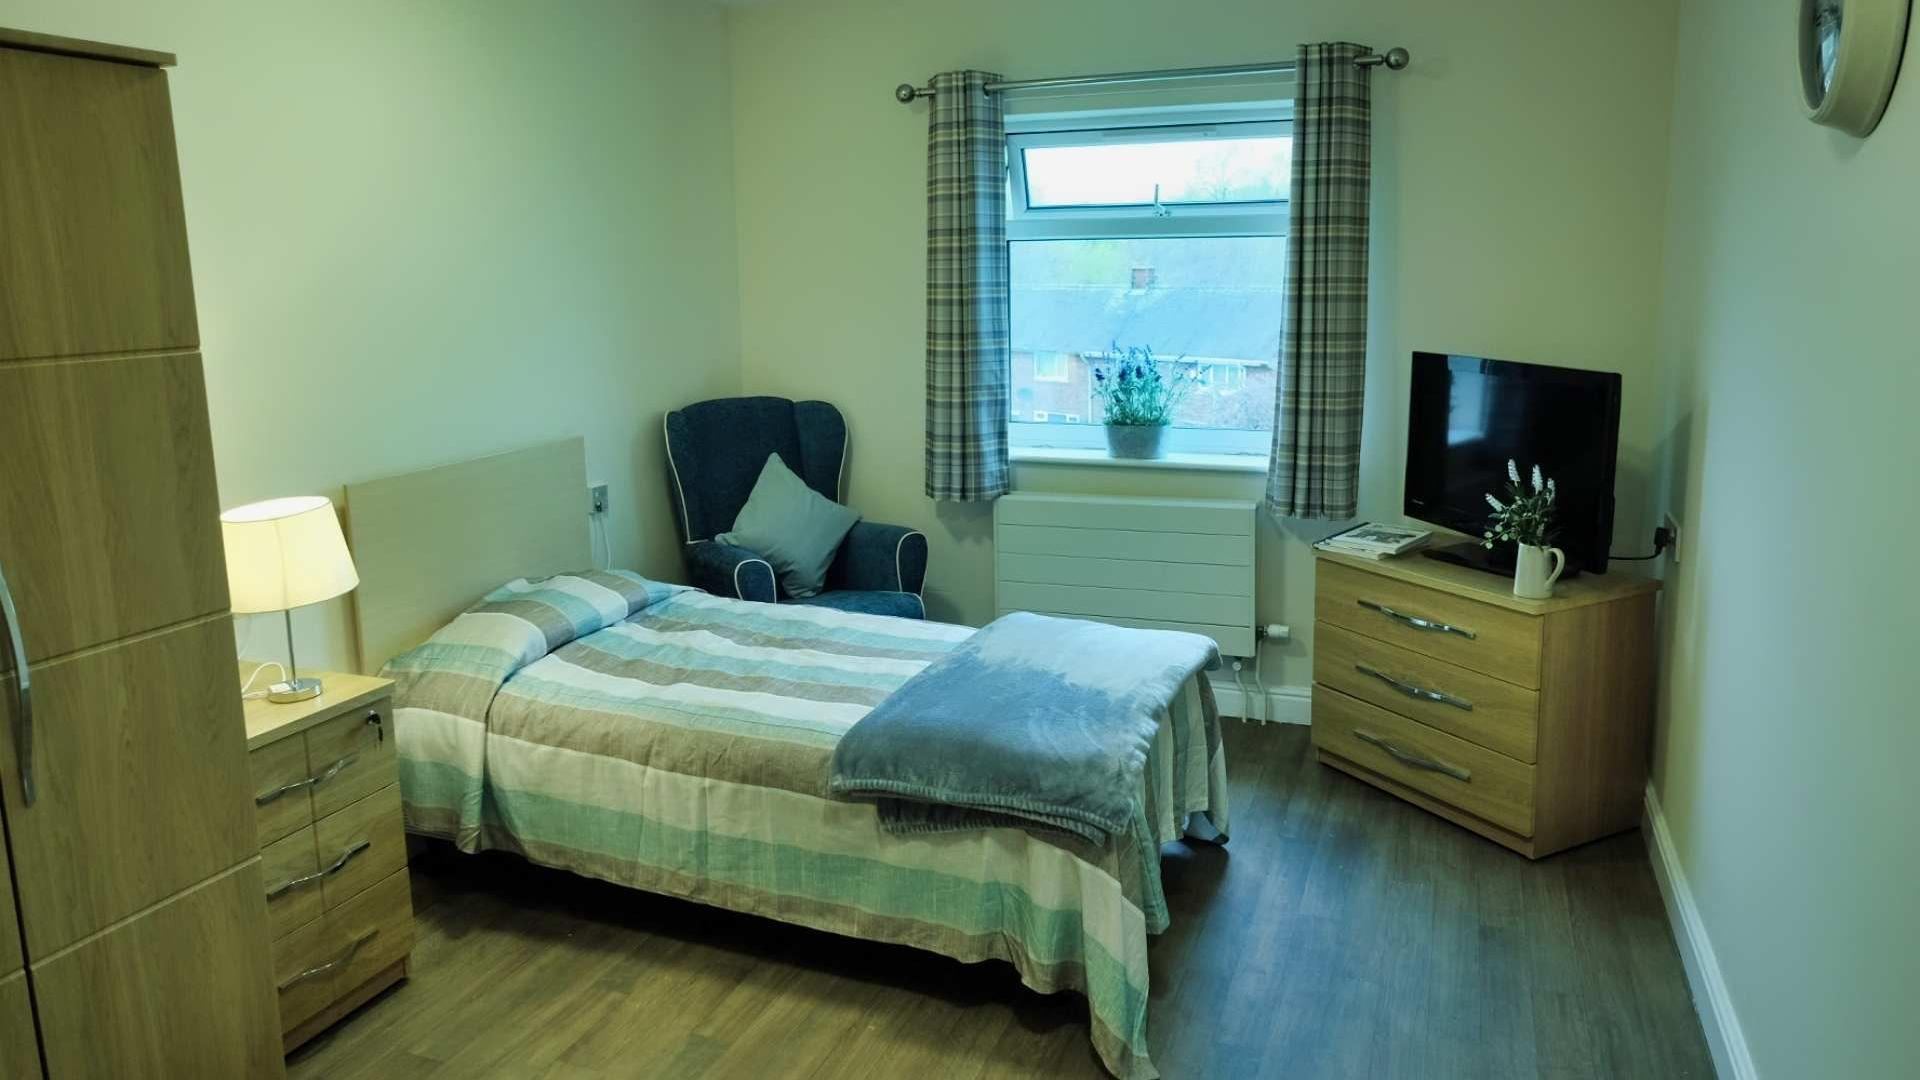 bedroom at millfield nursing home